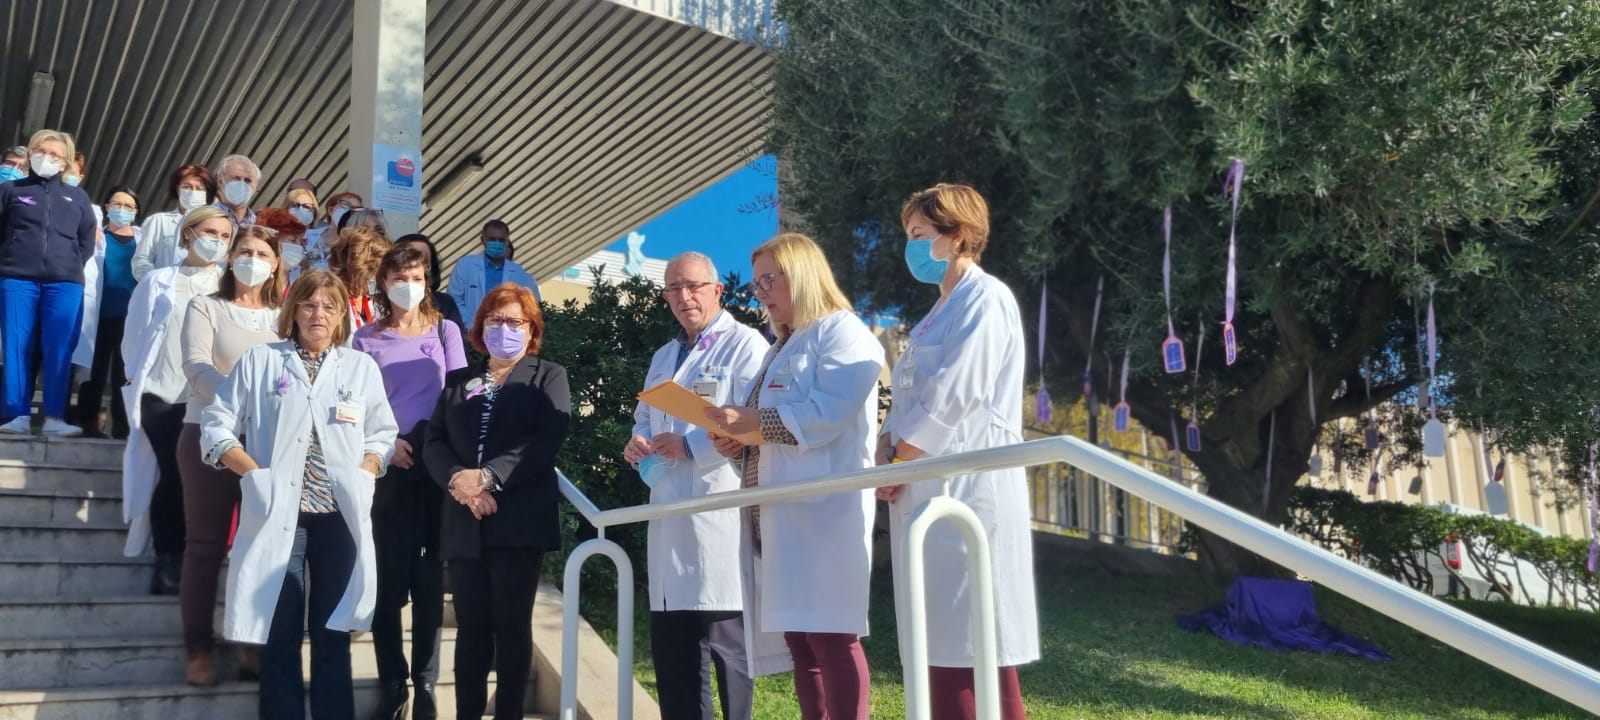 La directora de enfermería del departamento leyendo un manifiesto, en las escaleras de entrada al hospital, junto a al dirección del centro y los asistentes